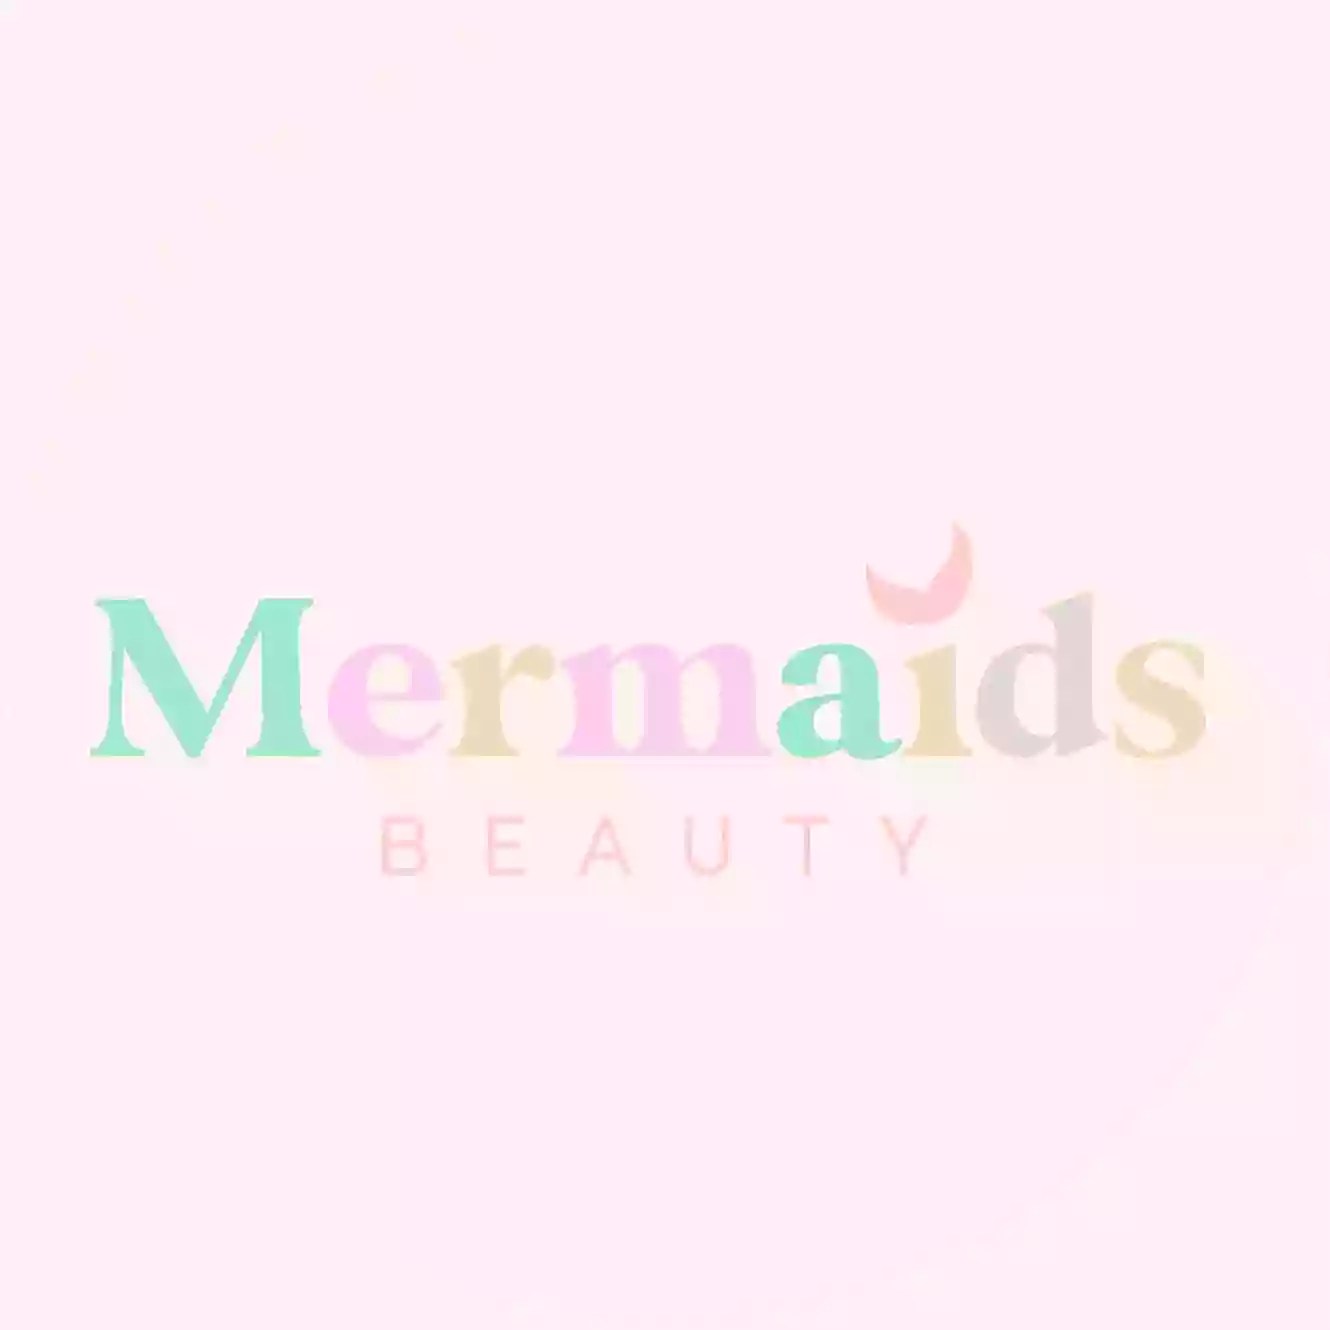 Mermaids Unisex Beauty Salon